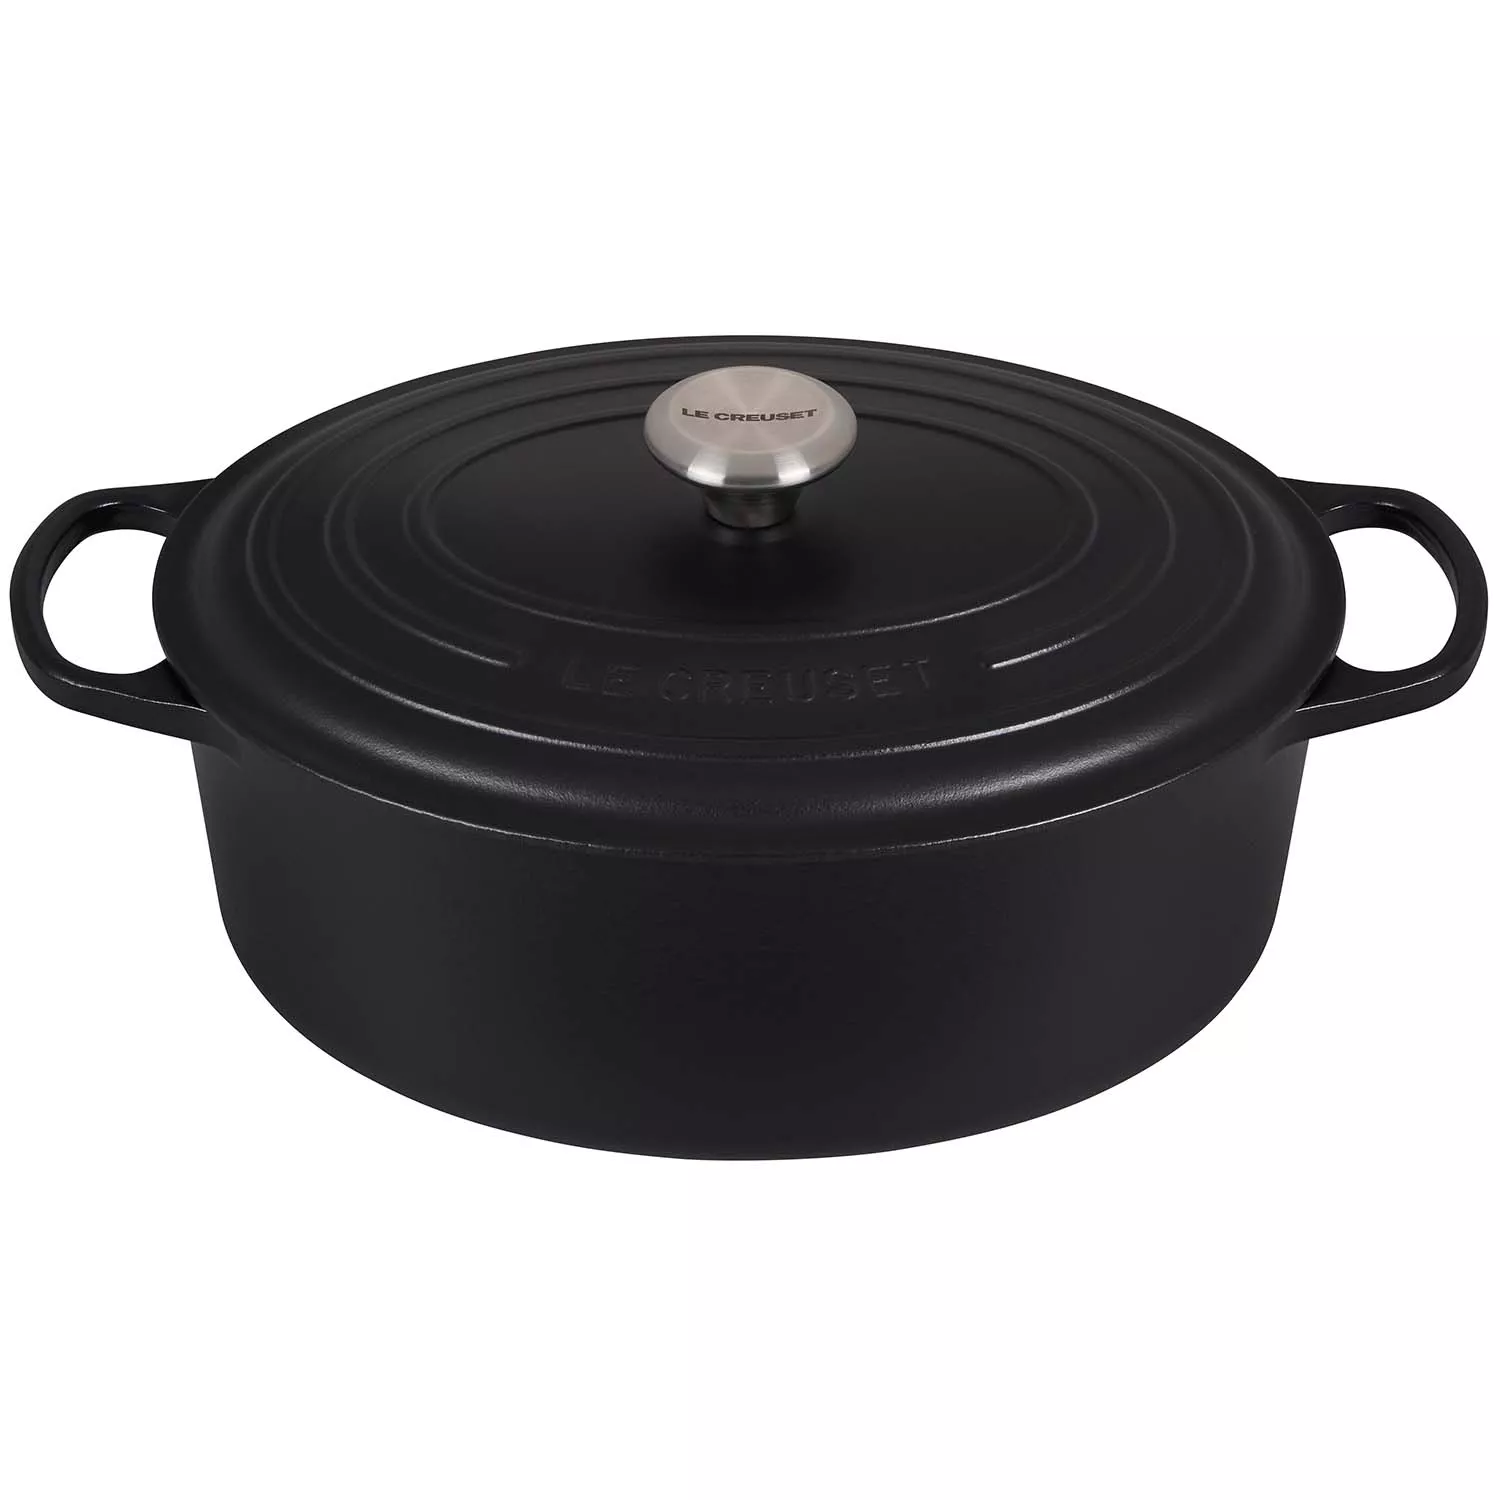 La Cuisine 6270 Enameled Cast Iron Covered Oval Dutch Oven Casserole Pot,  6.75 QT ( 6.5 Liter )